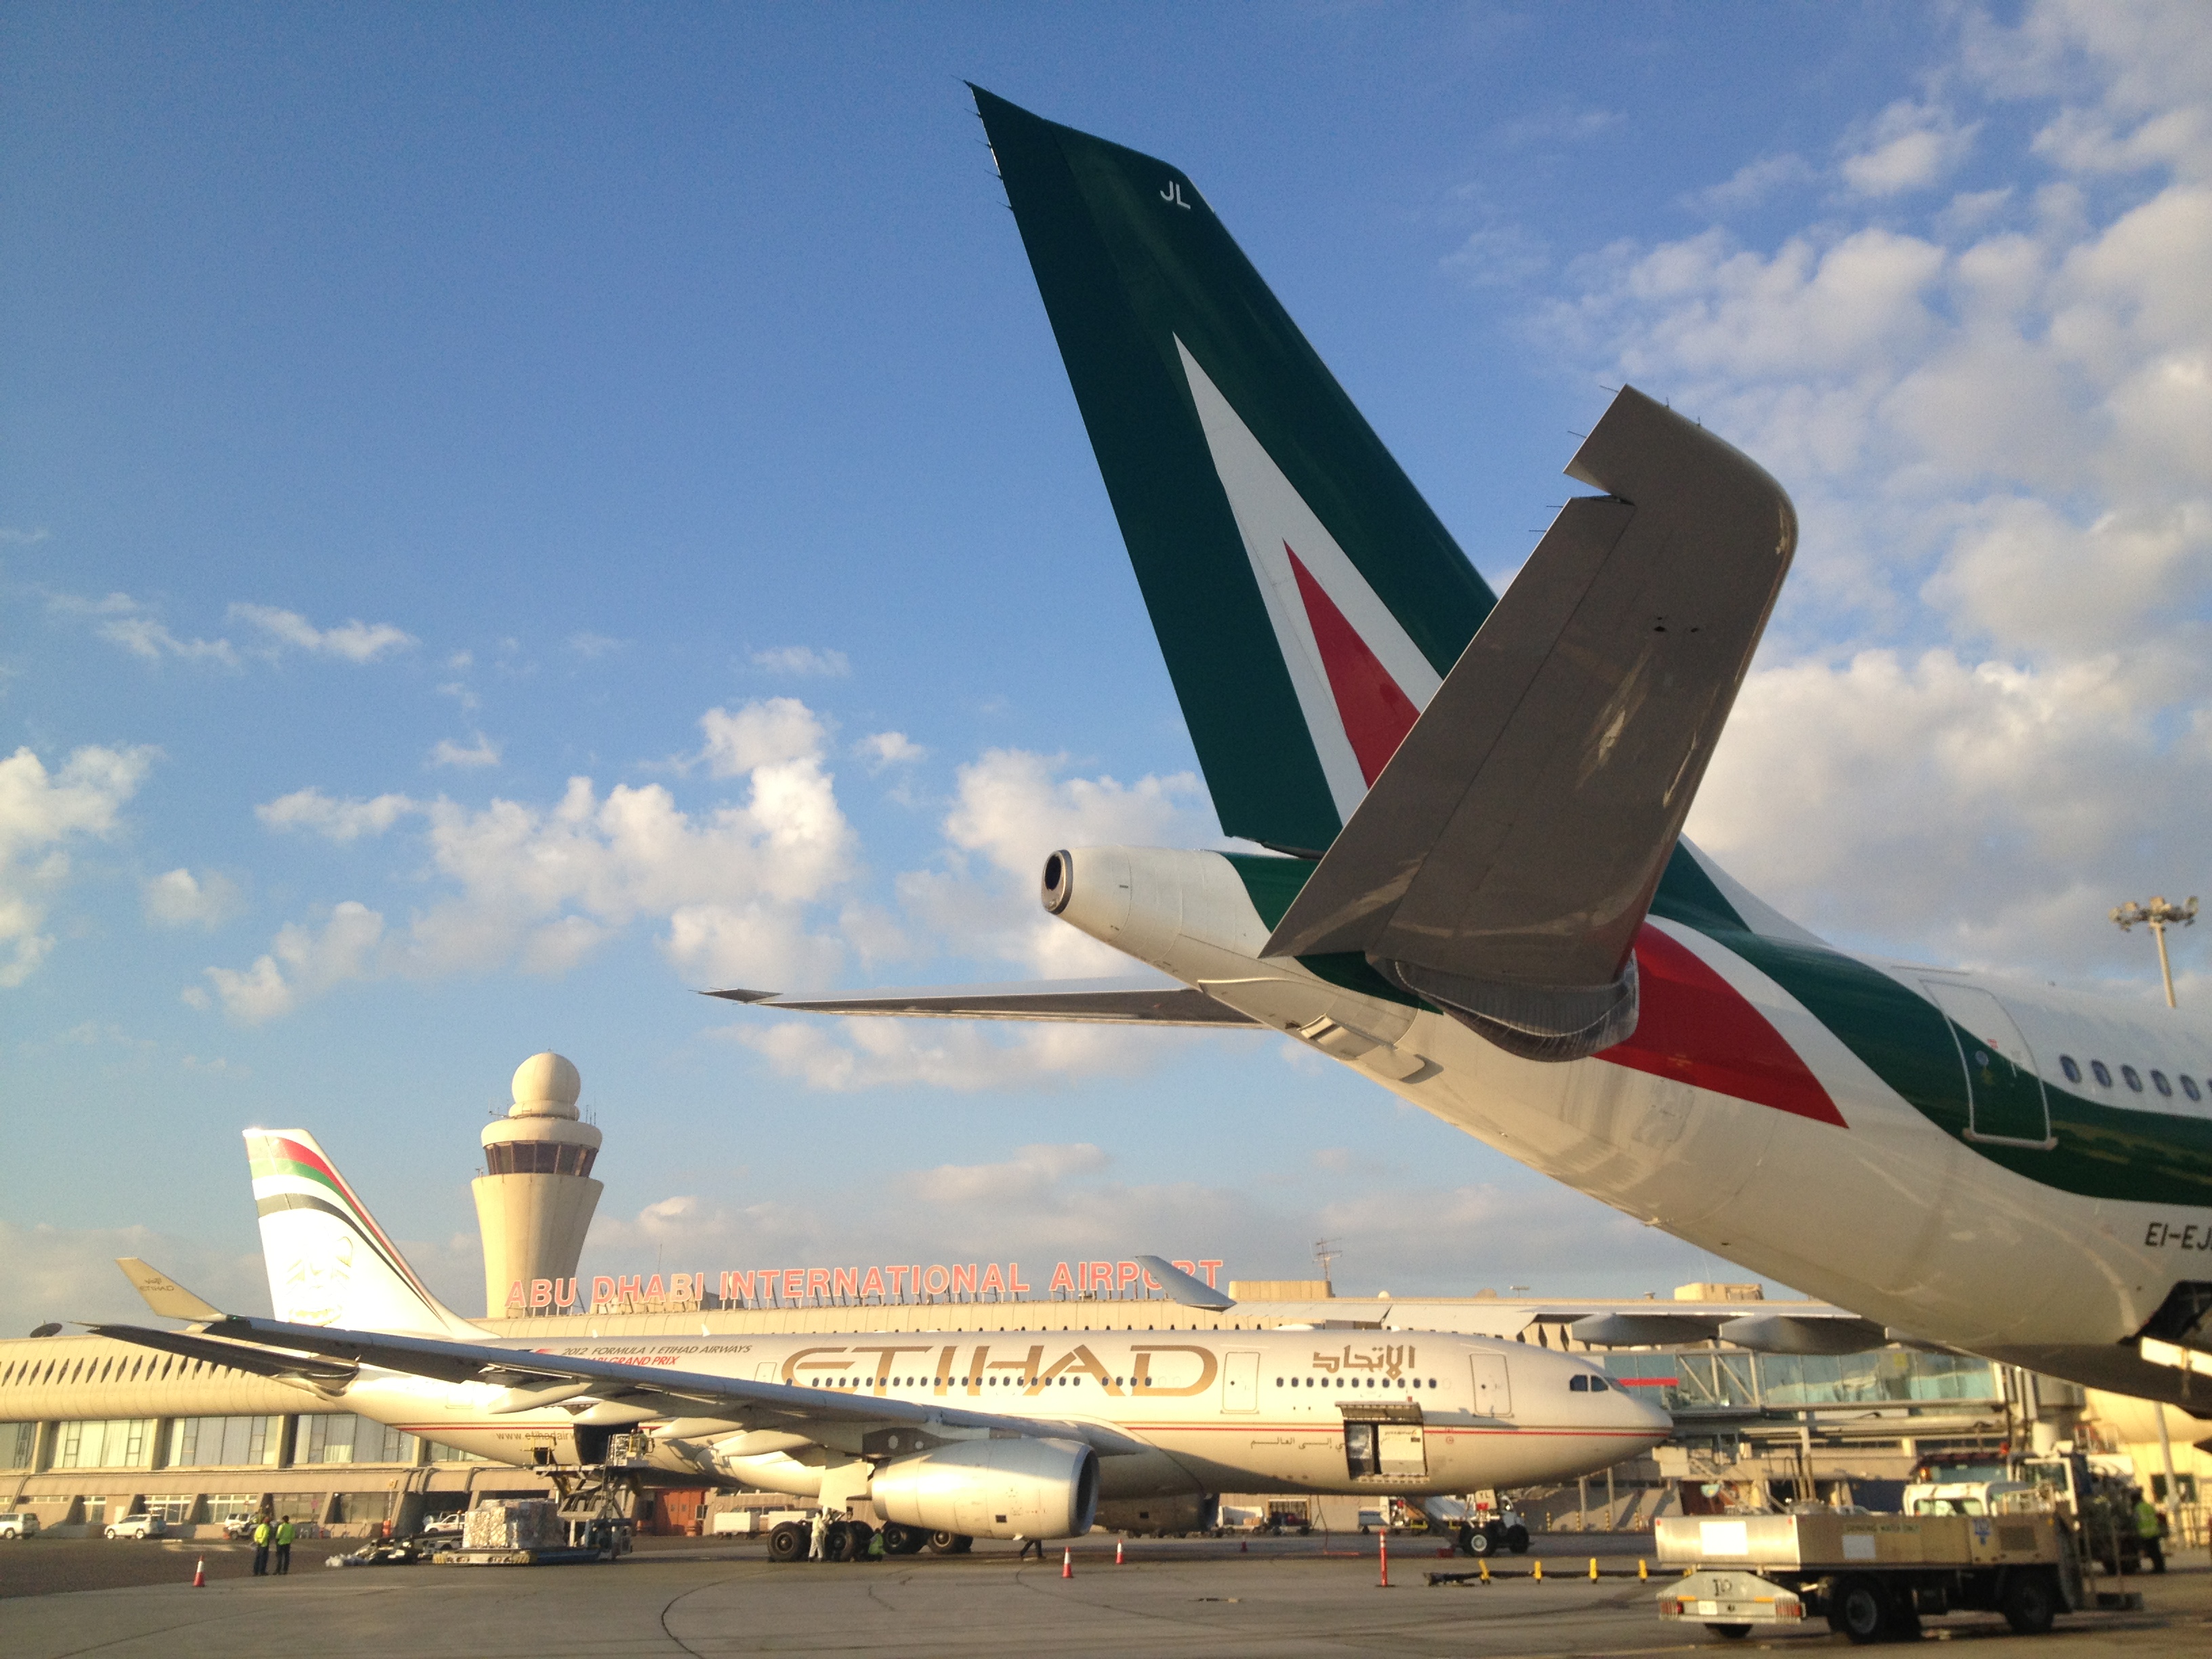 Alitalia: decollo per Roma Fiumicino – Abu Dhabi. Code-sharing con Etihad per ampliare il network